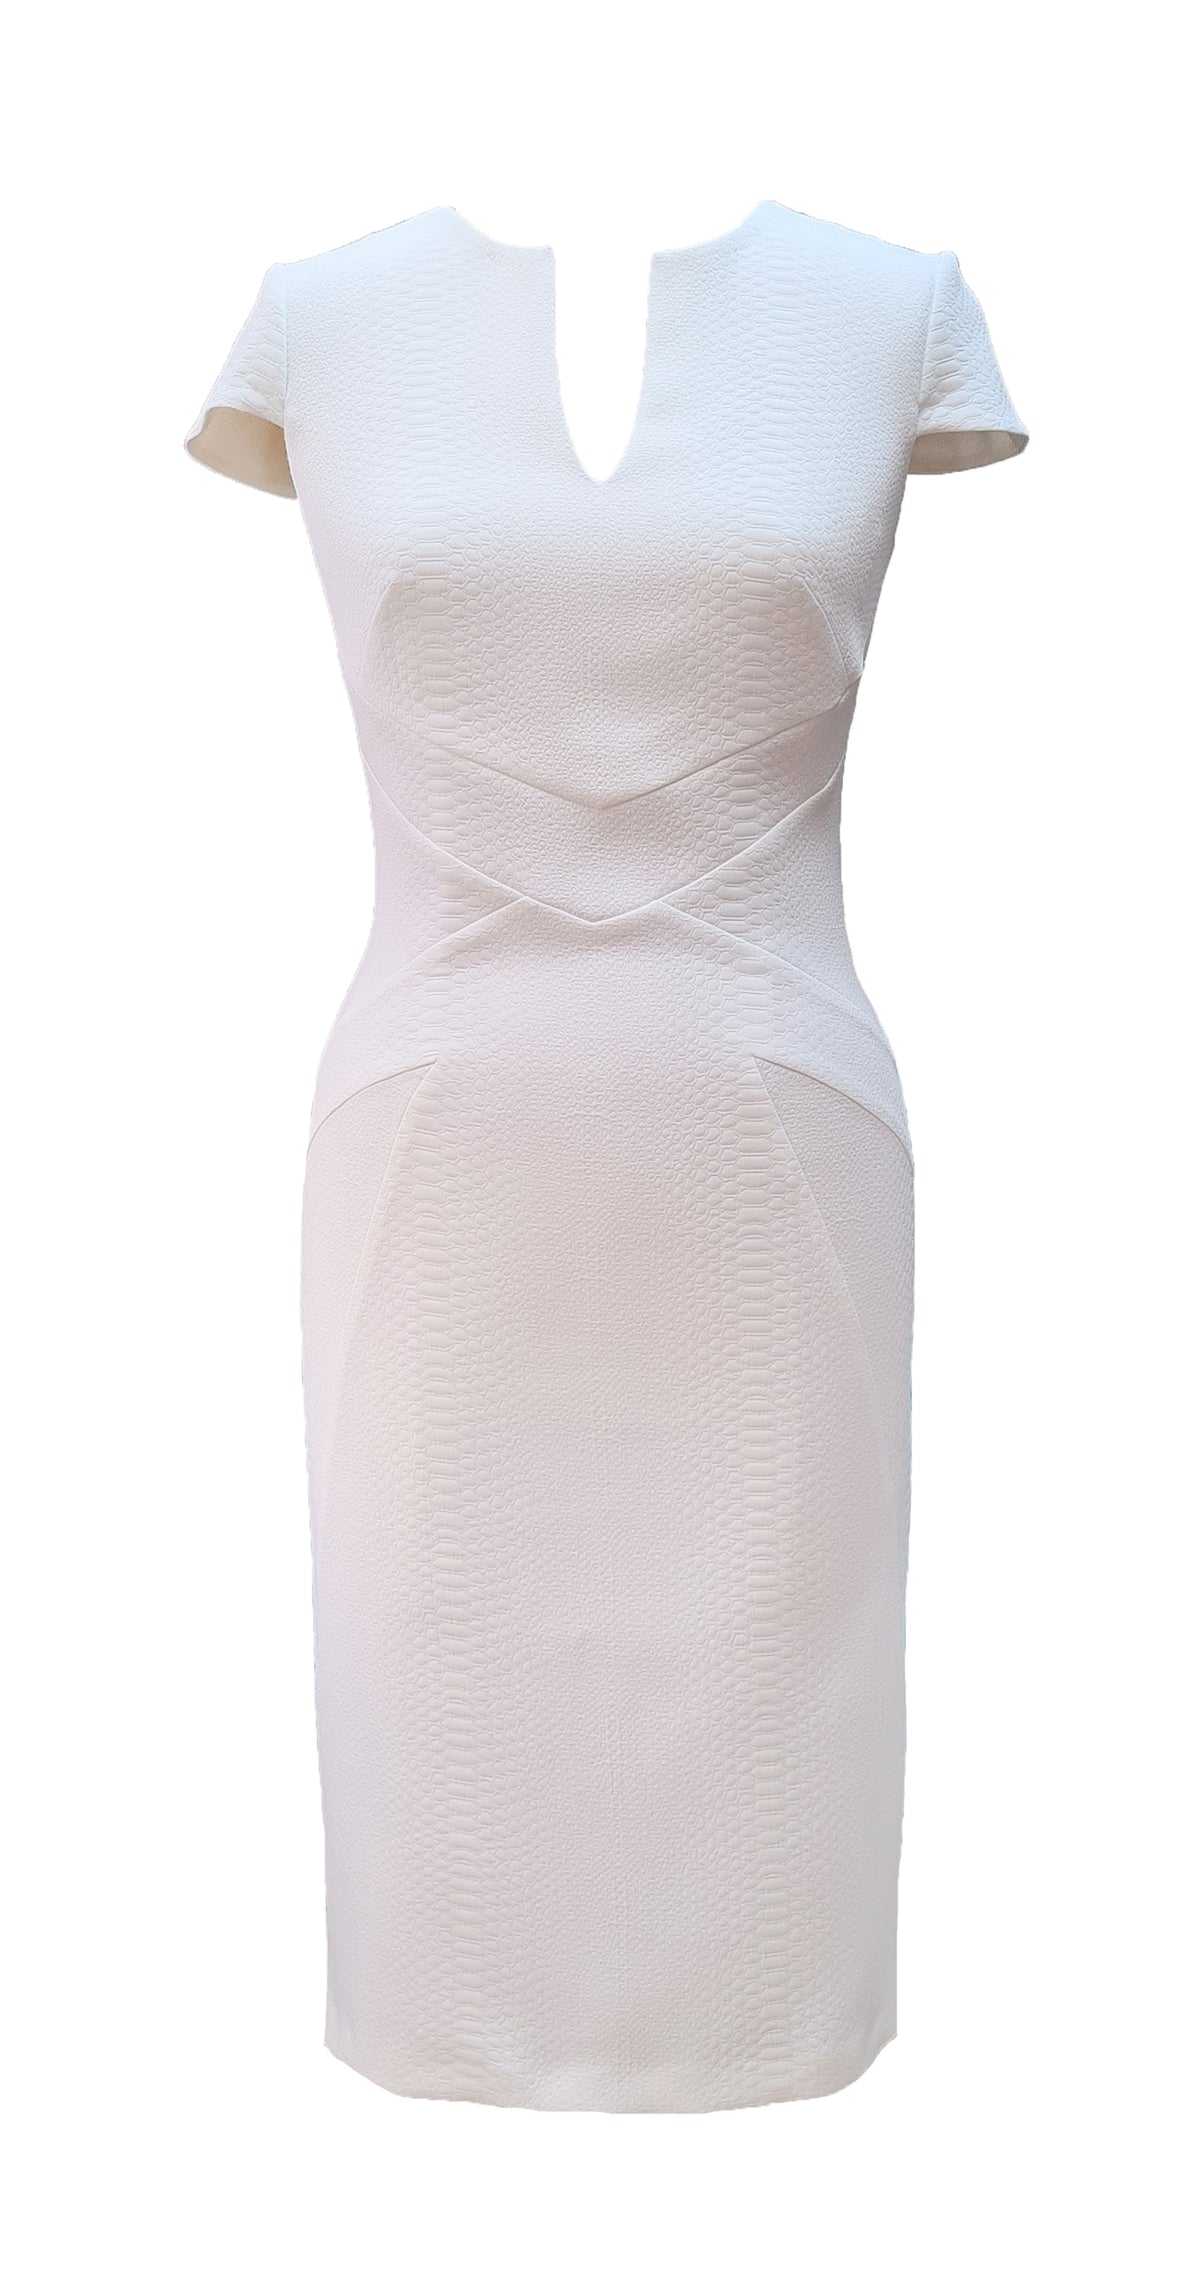 Allegra Dress DRC390 White Snake Jacquard